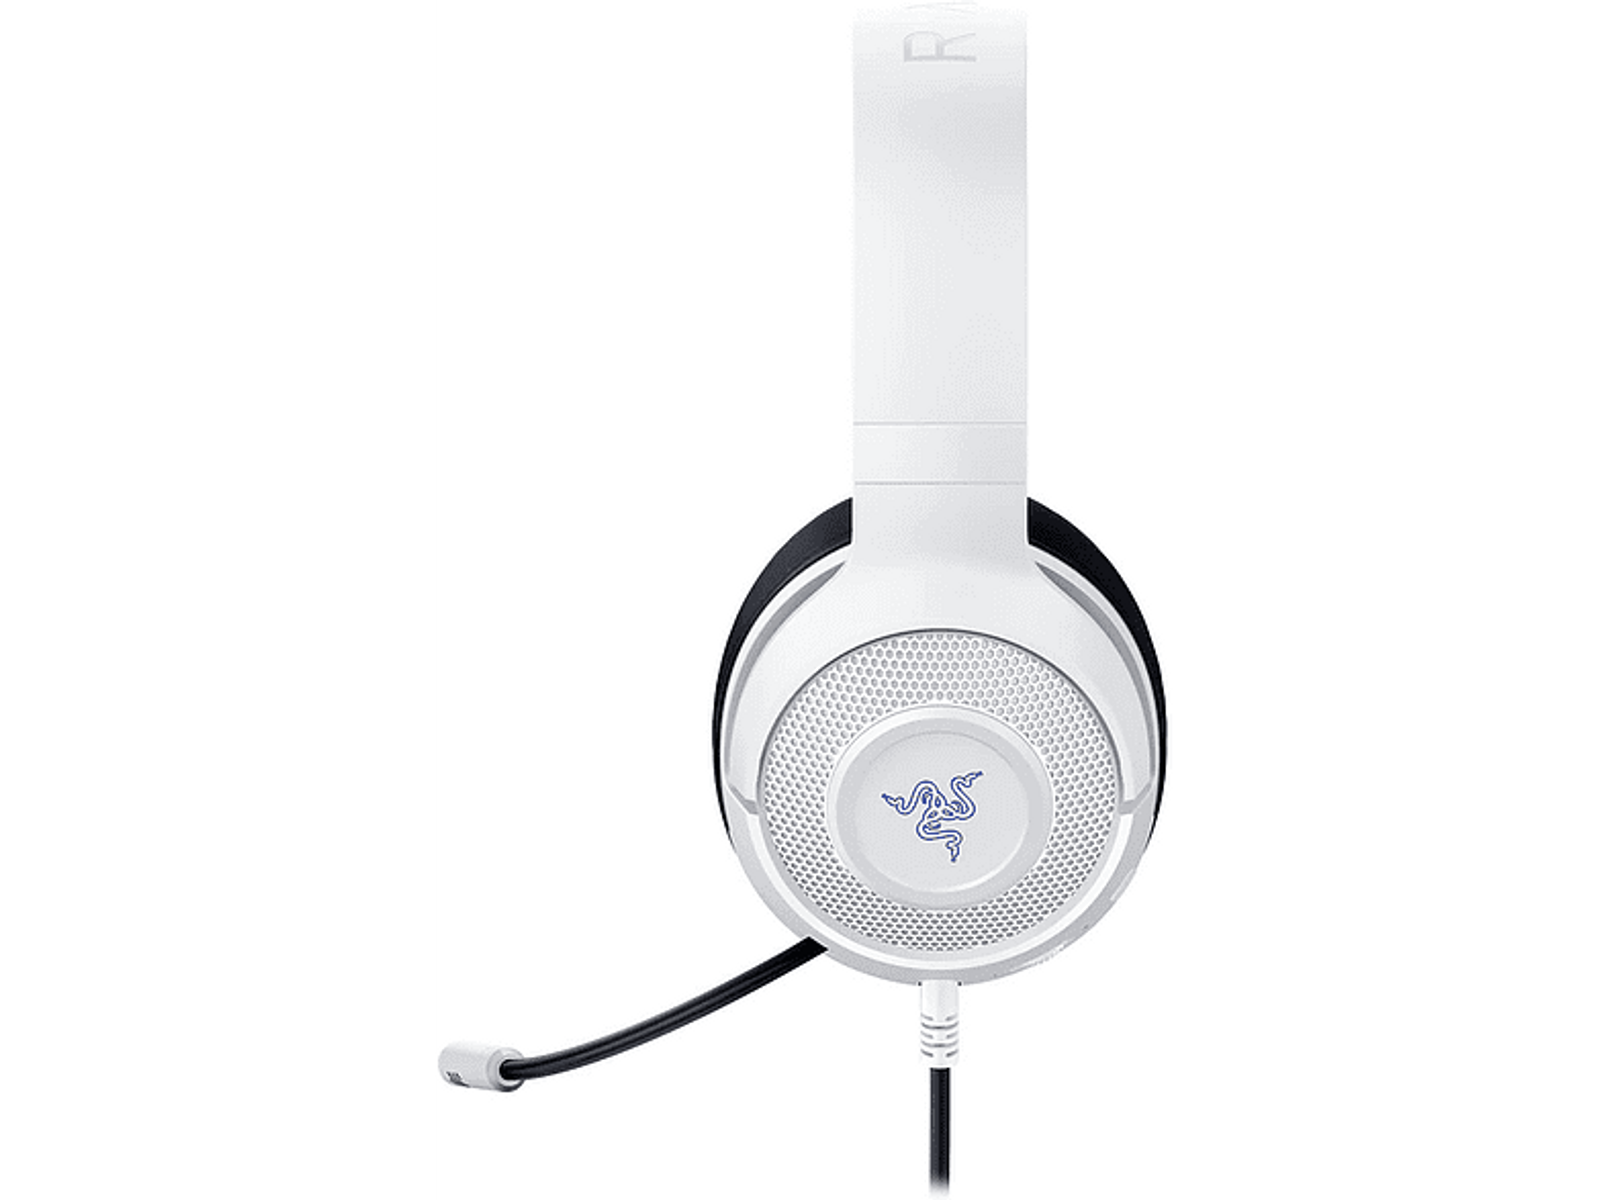 RZ04-02890500-R3M1 KRAKEN FOR Headset Over-ear RAZER X CONSOLE Gaming WHITE, Weiß/Blau